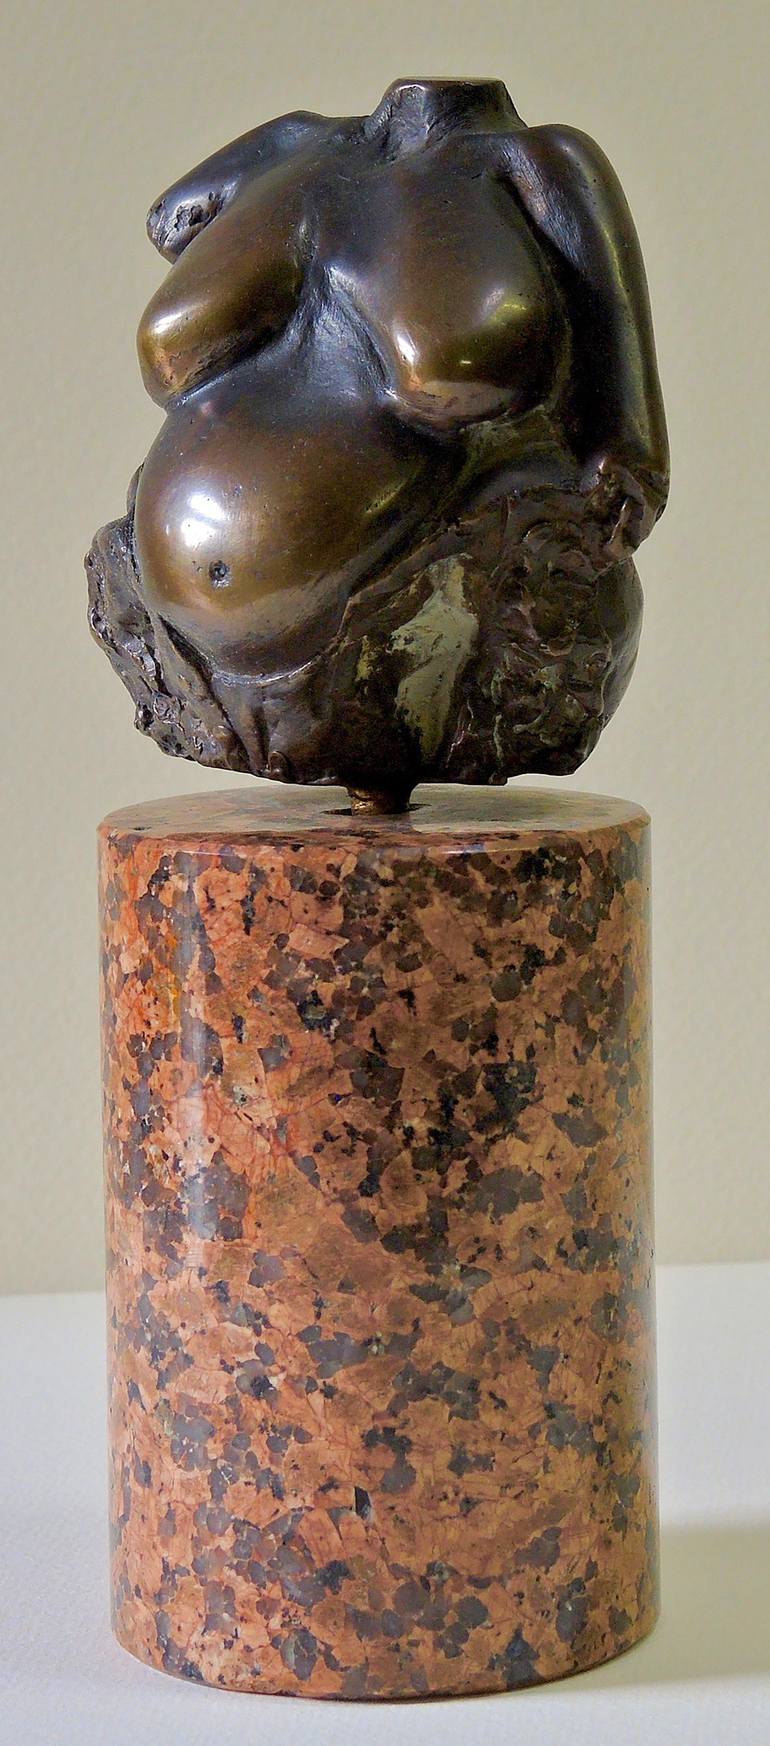 Original Figurative Nude Sculpture by bolek markowski